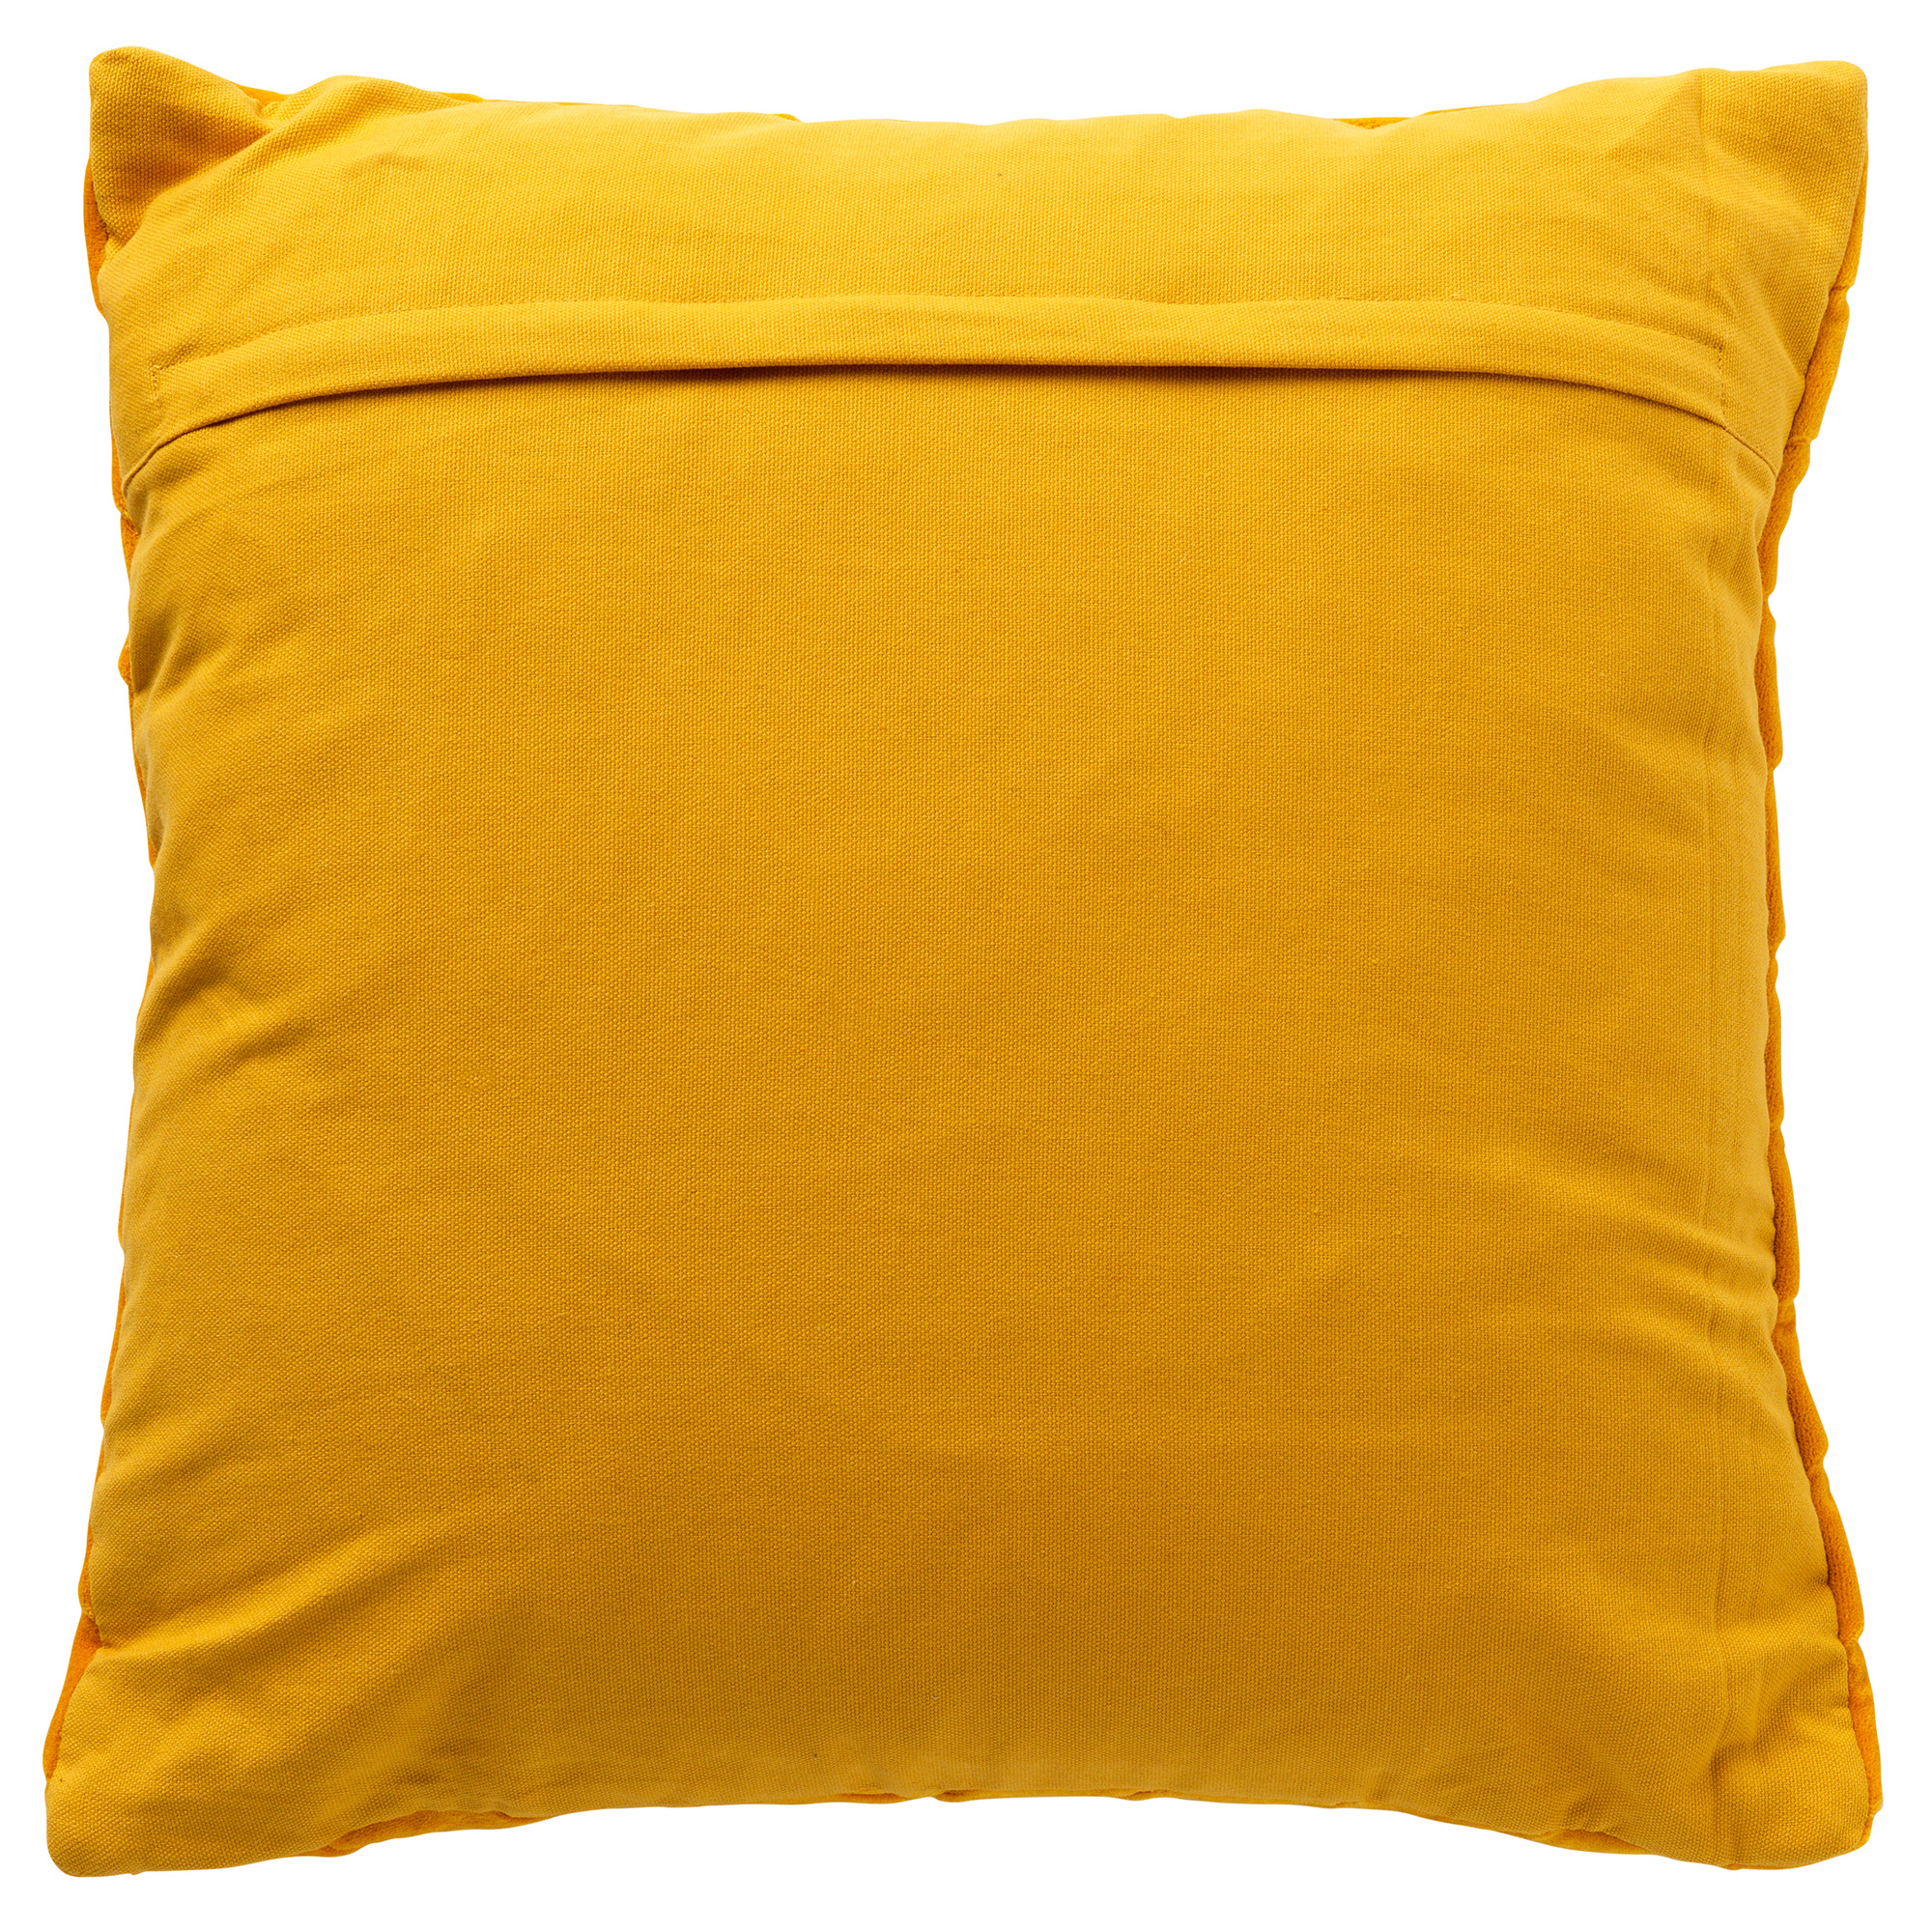 GIDI - Kussenhoes 45x45 cm - velvet - effen kleur - Golden Glow - geel